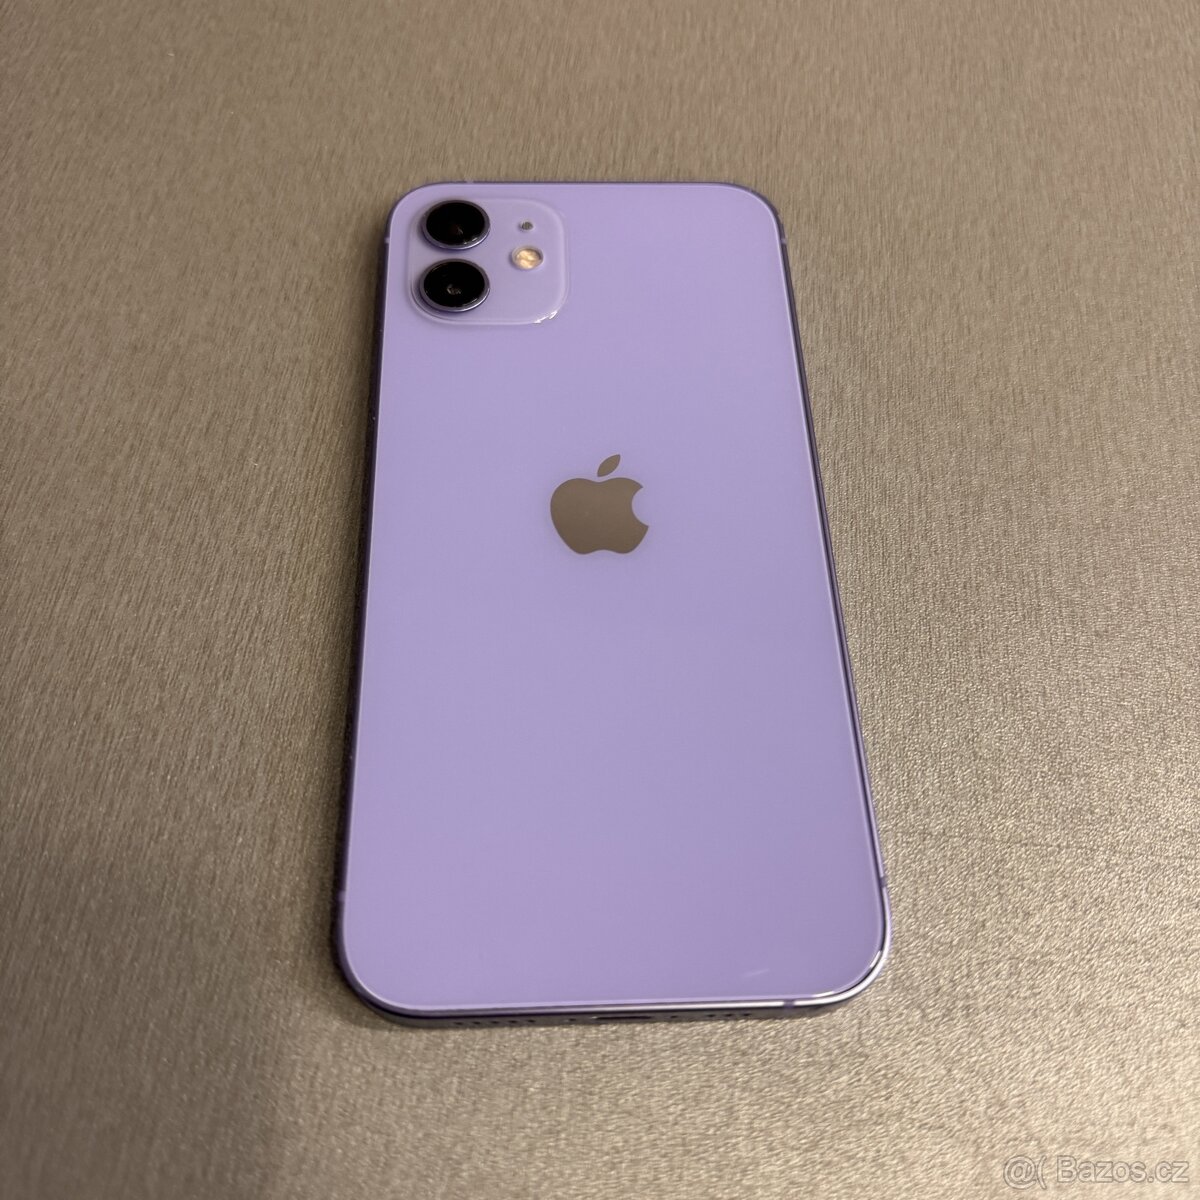 iPhone 12 128GB fialový, pěkný stav, 12 měsíců záruka